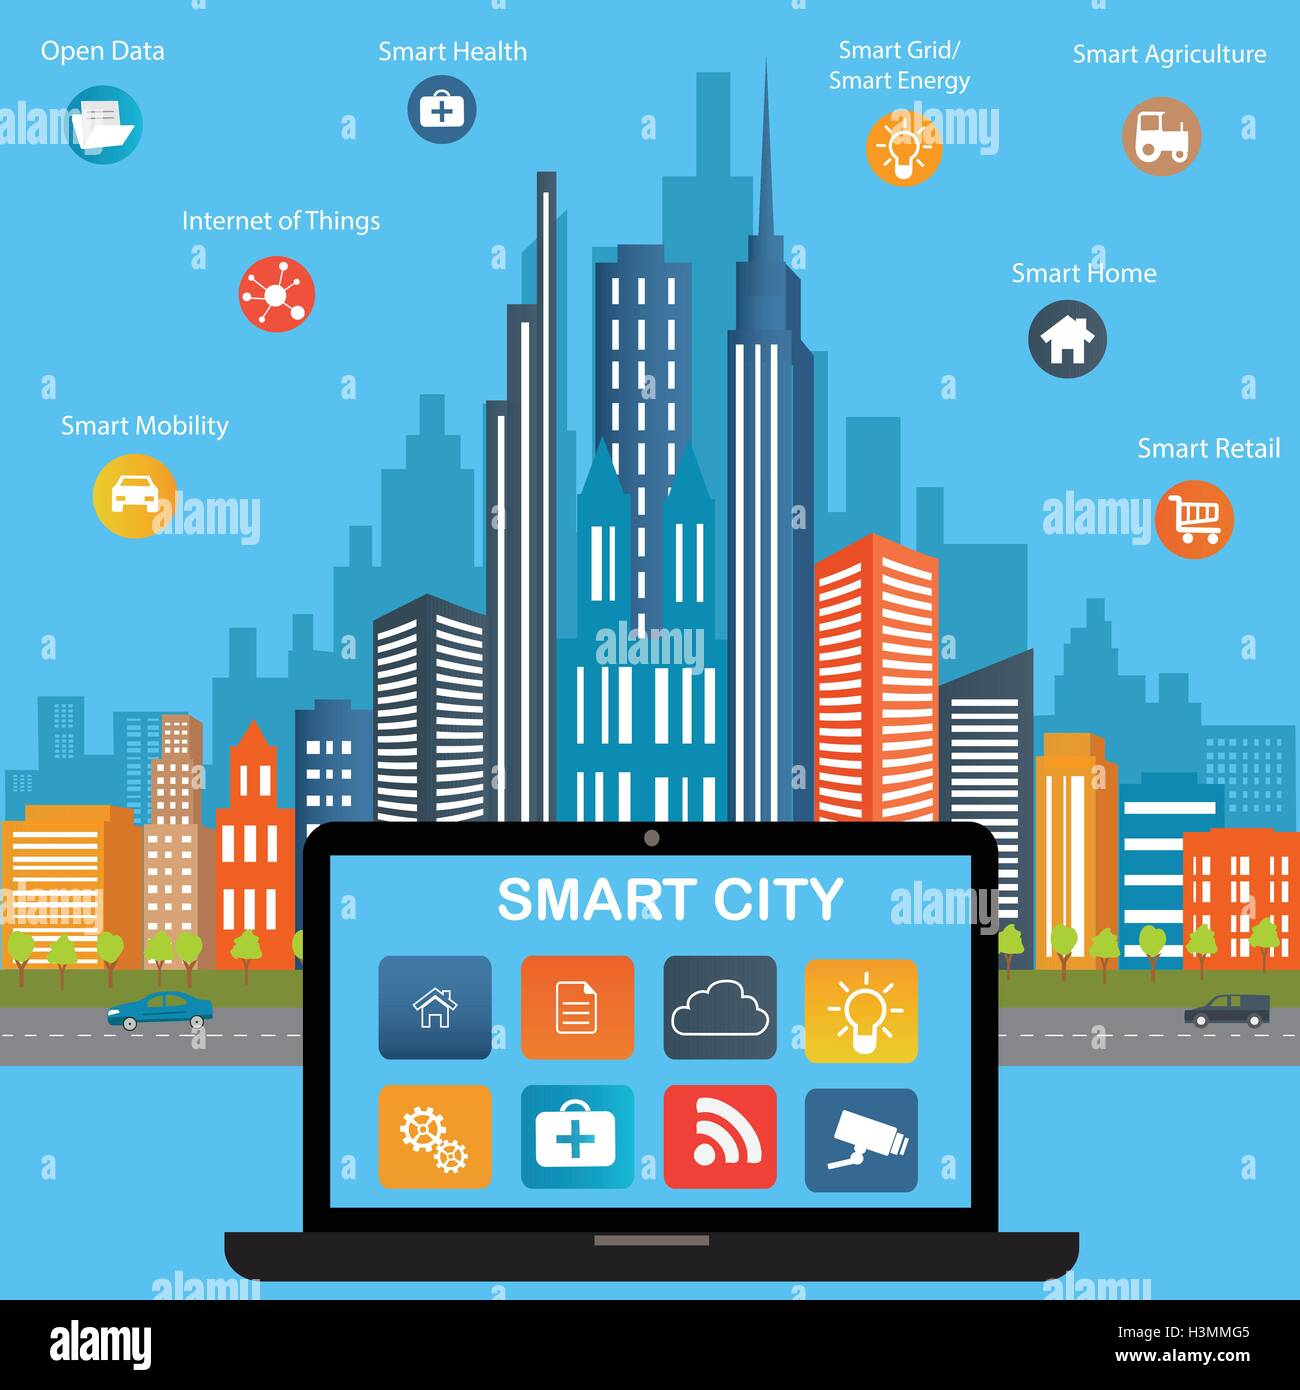 Smart City-Konzept mit verschiedenen Symbol und Elemente. Moderne Stadtplanung mit Zukunftstechnologie für das Leben. Stock Vektor